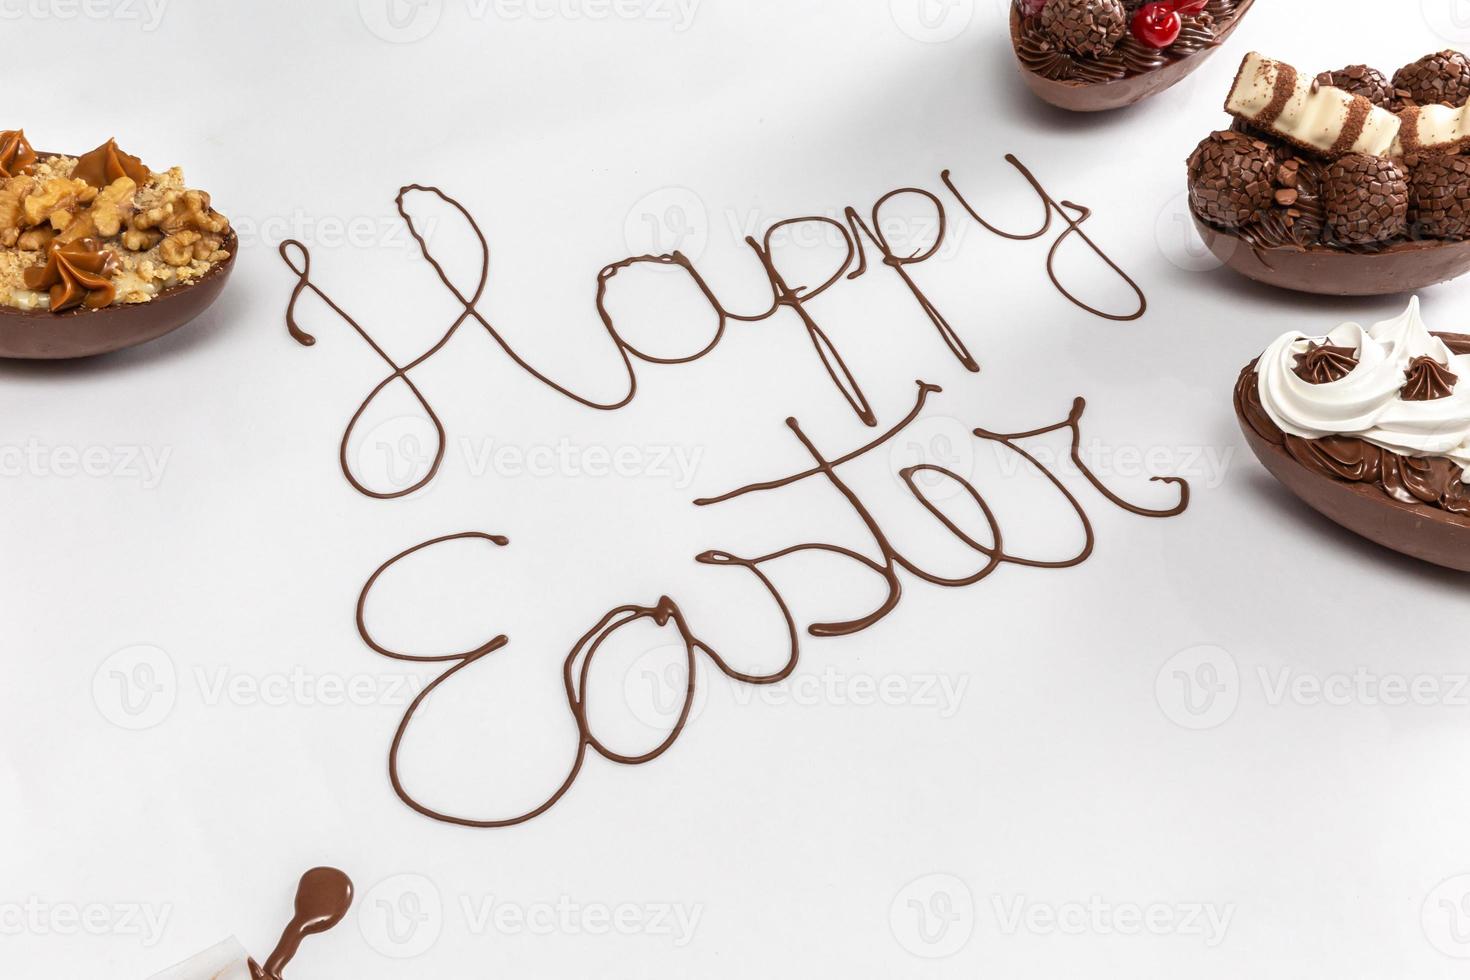 felices pascuas escritas con chocolate derretido sobre fondo blanco. con huevos de pascua gourmet decorando a los lados. foto